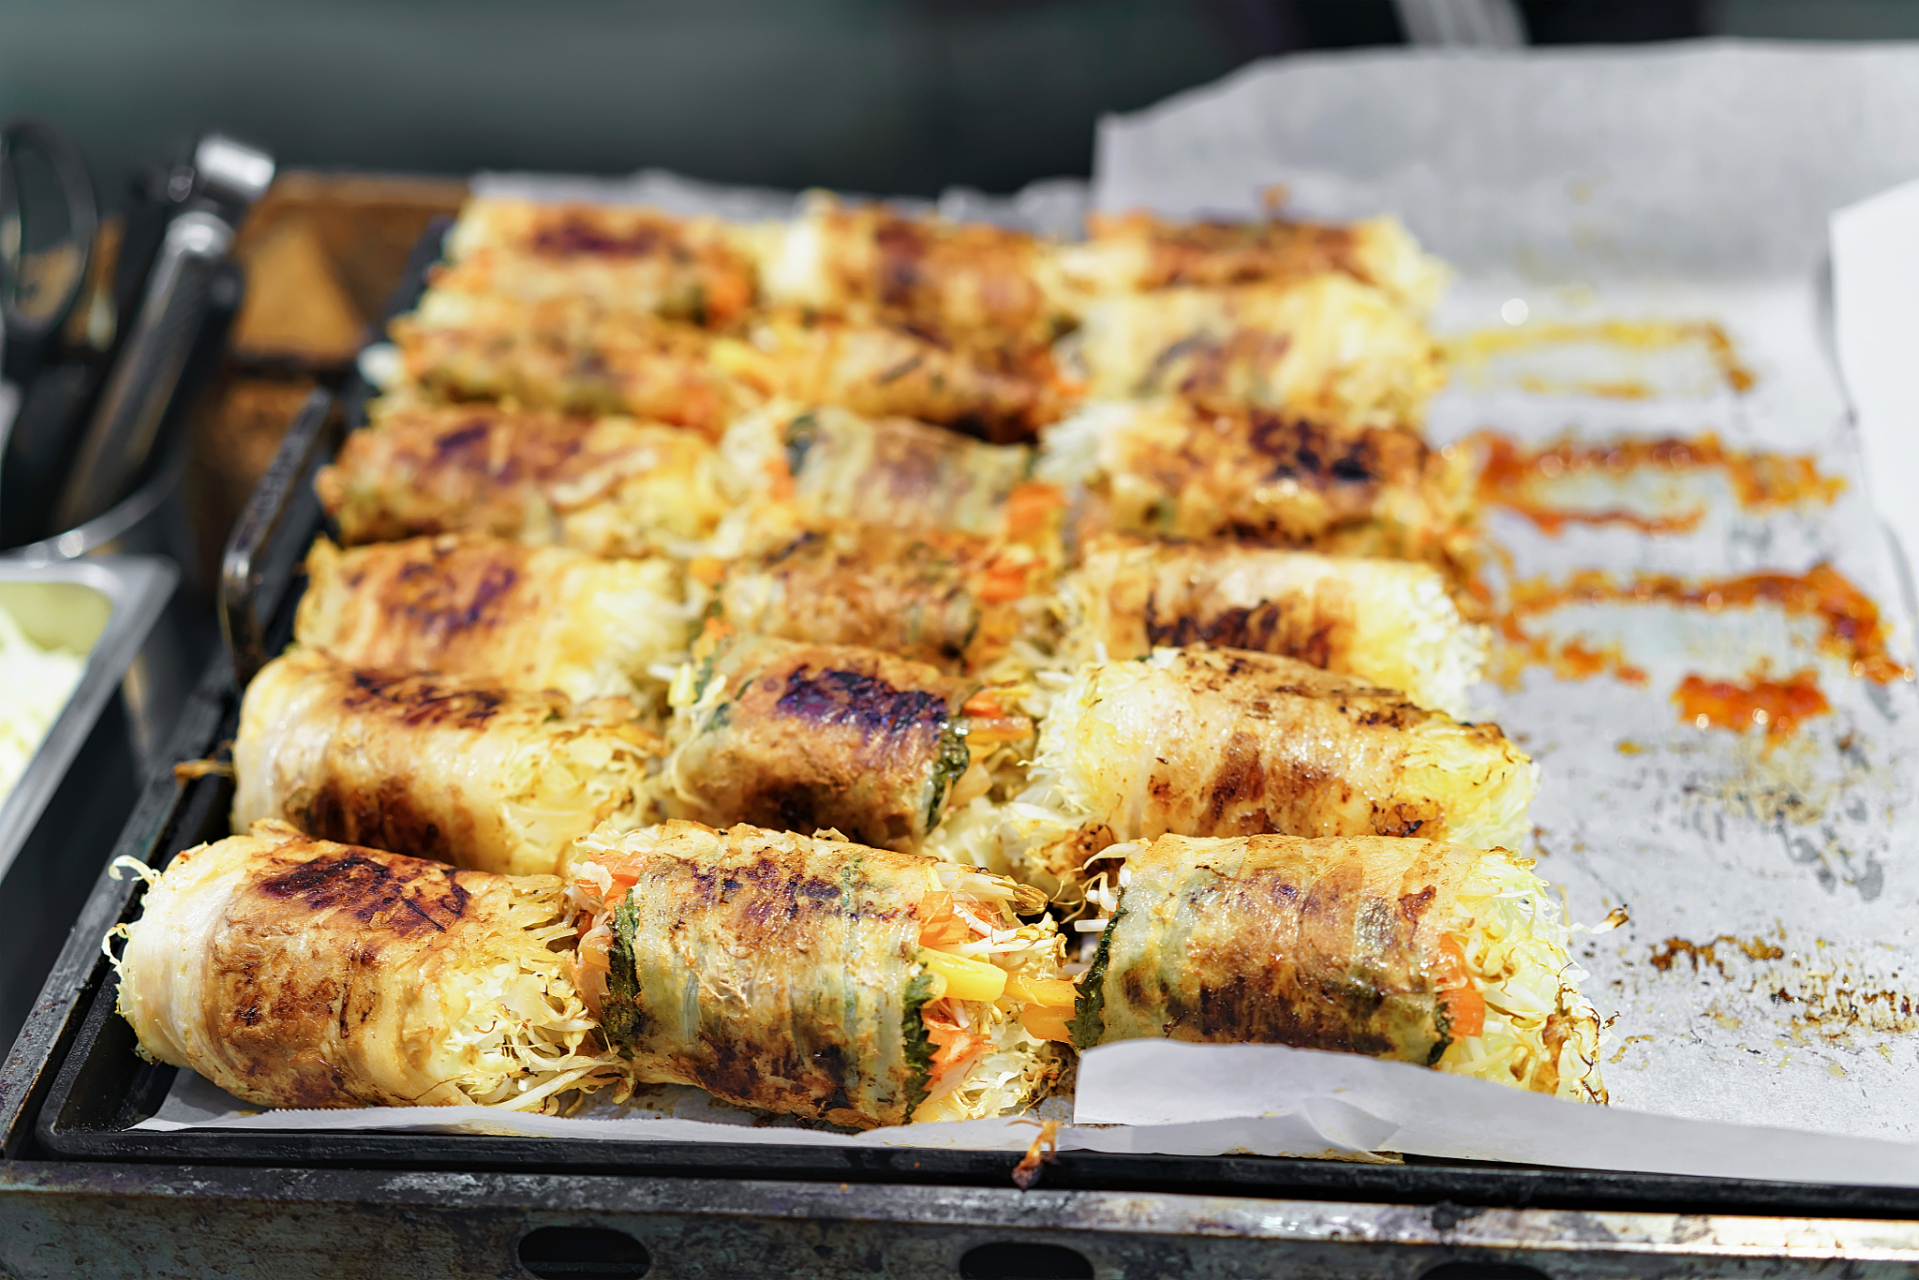 云南十八怪之一烤乳扇,大理街头最常见的小吃,将筷子劈为两半,中间夹